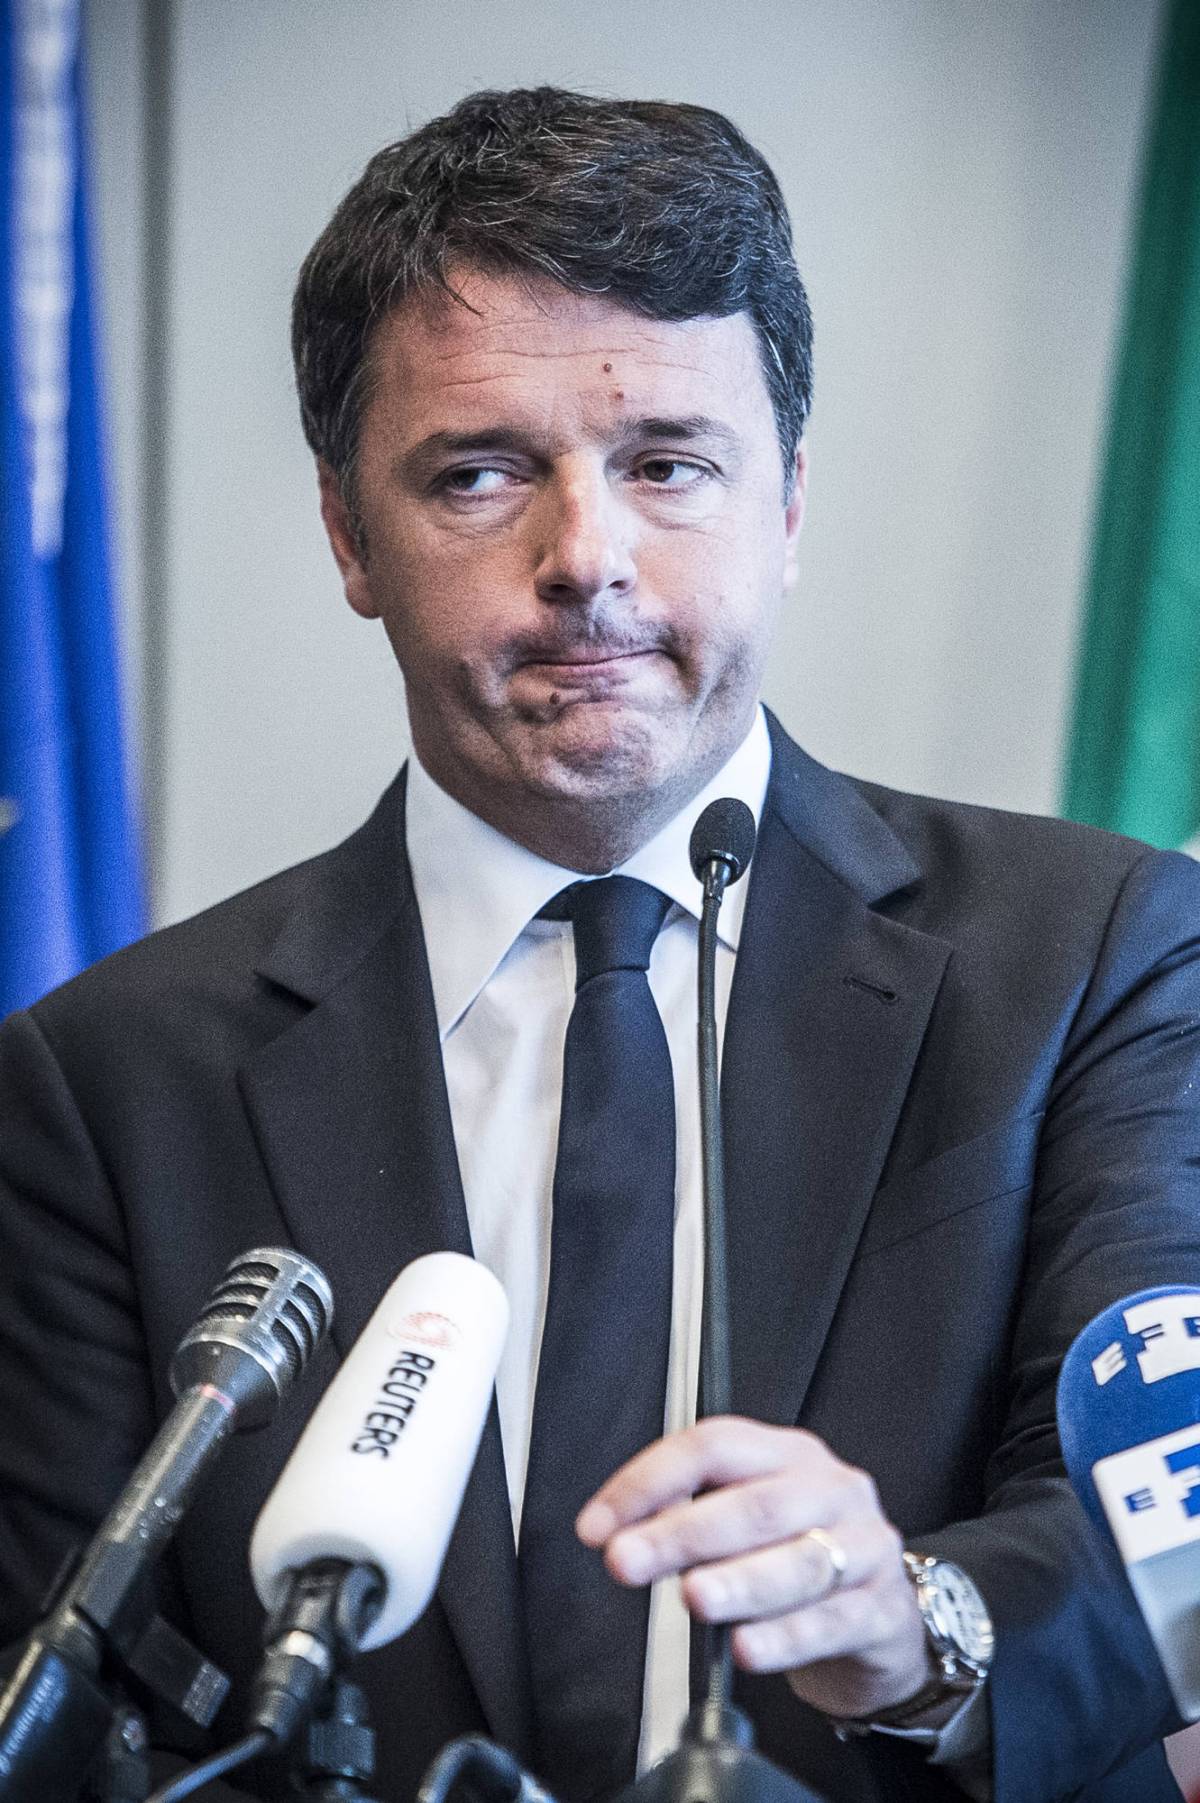 Renzi accetta il Tedeschellum "Non mi piace ma è l'unica via"